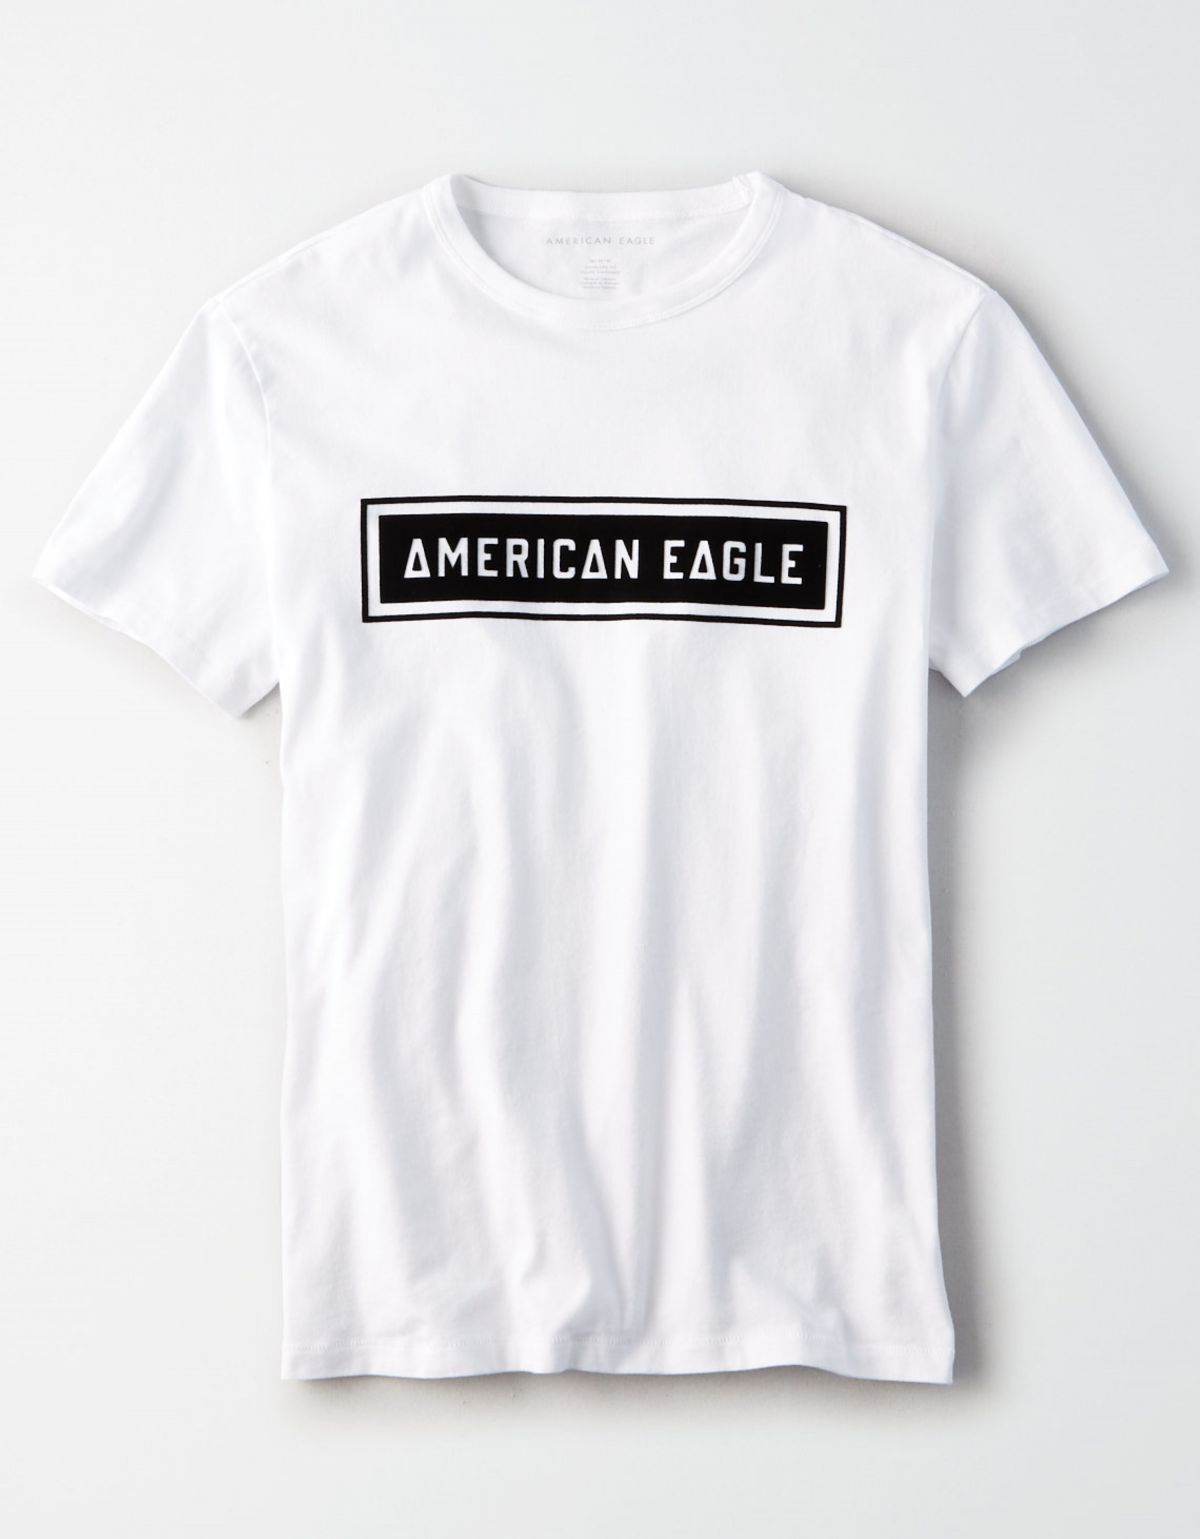  טי שירט לוגו בוקס של AMERICAN EAGLE